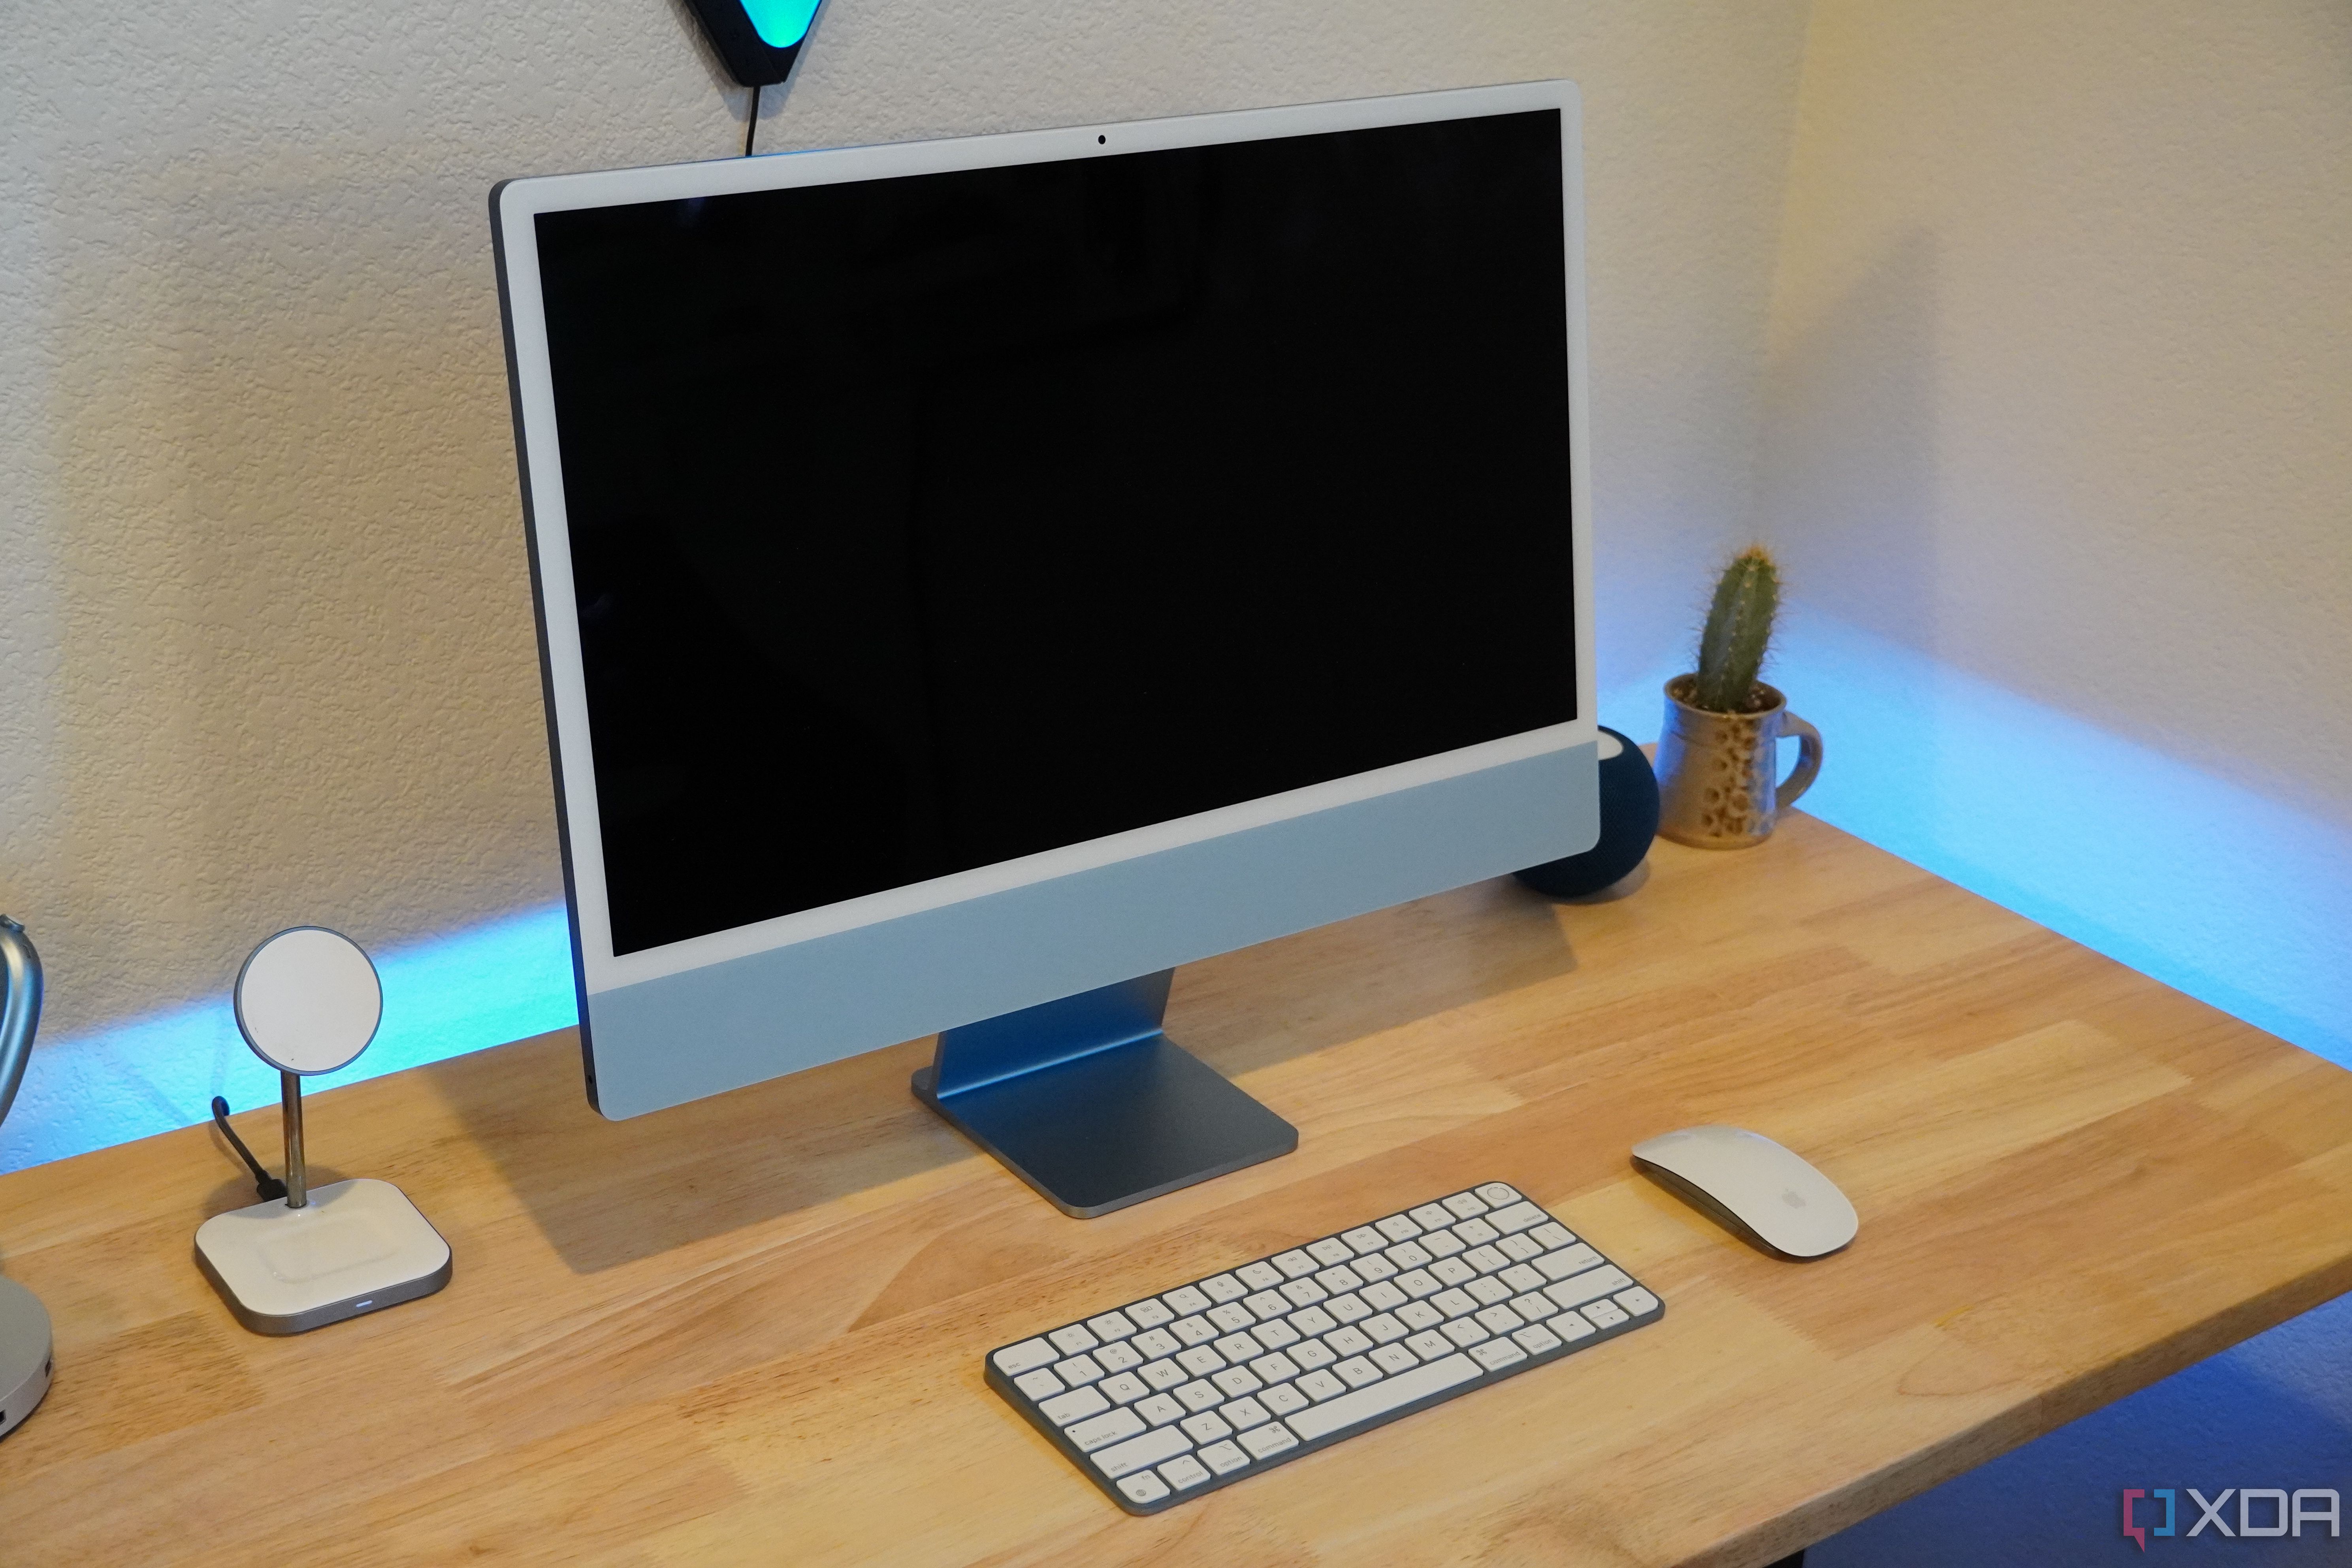 An iMac setup with the display off.